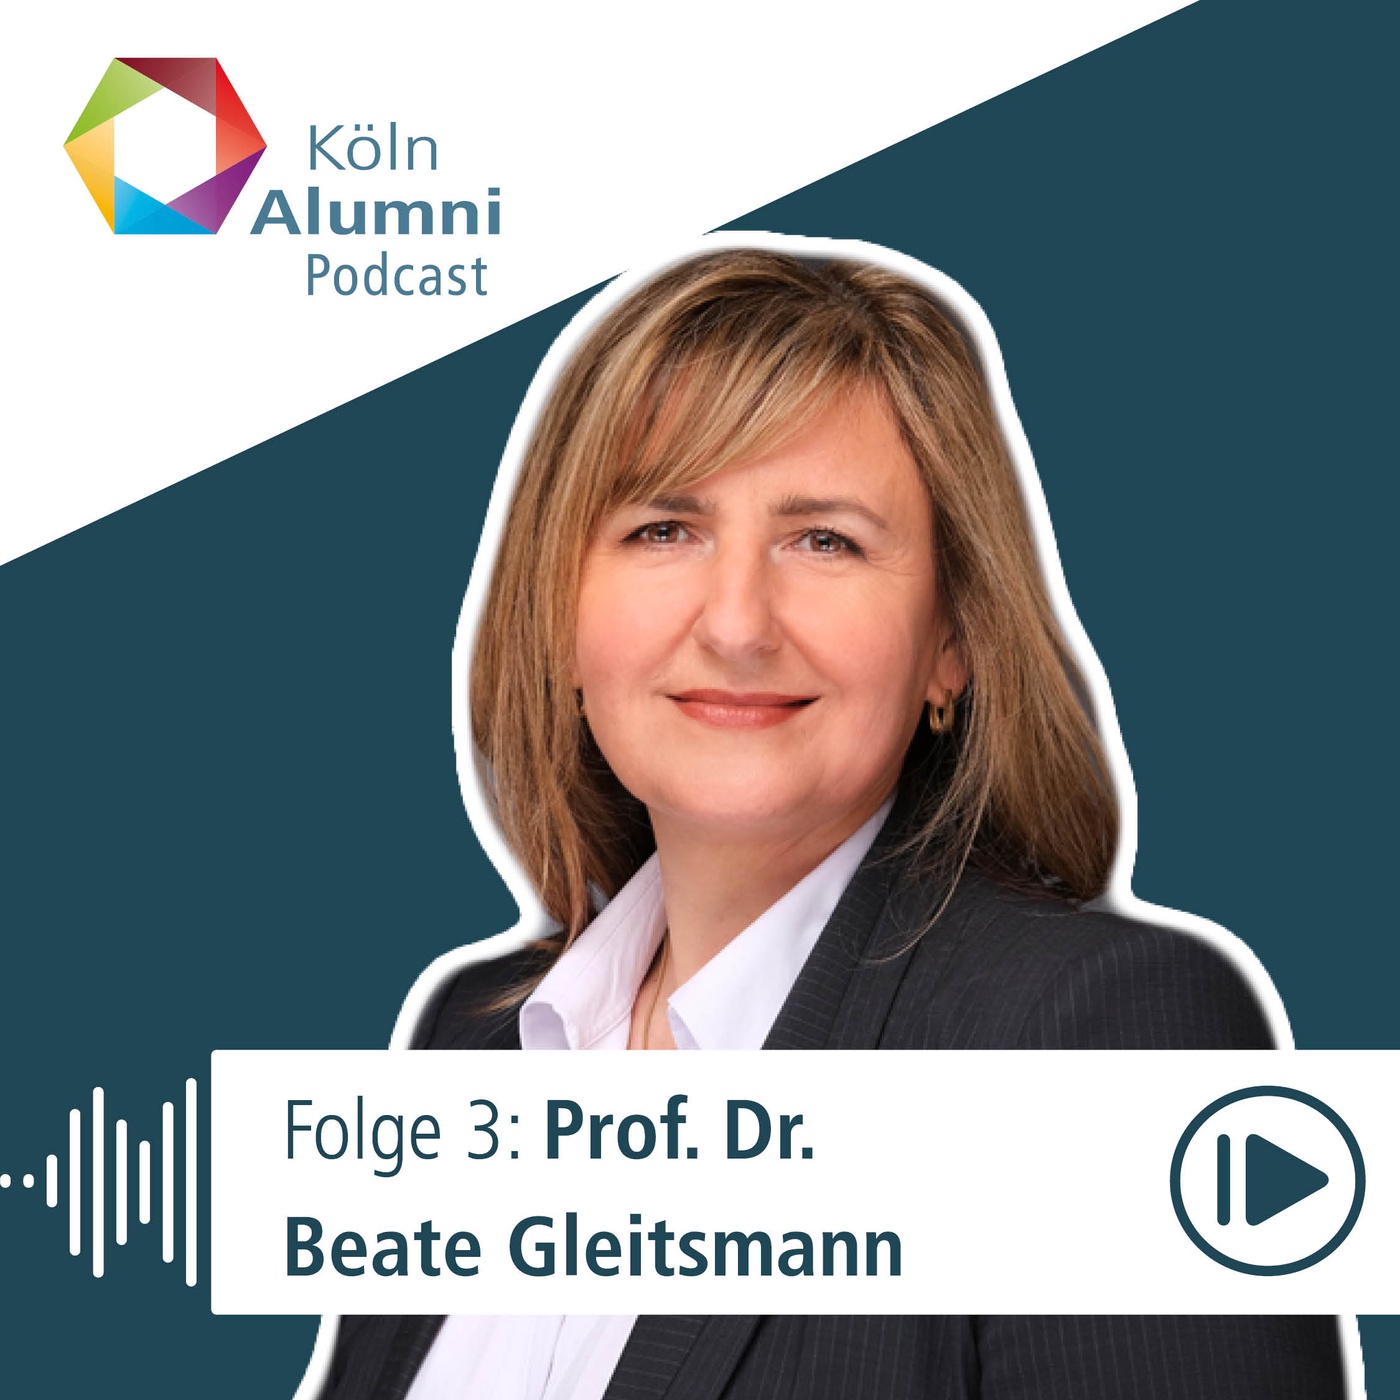 Prof. Dr. Beate Gleitsmann - BWL-Professorin: Über Hürden und warum ihr Herz noch immer für die Uni Köln schlägt